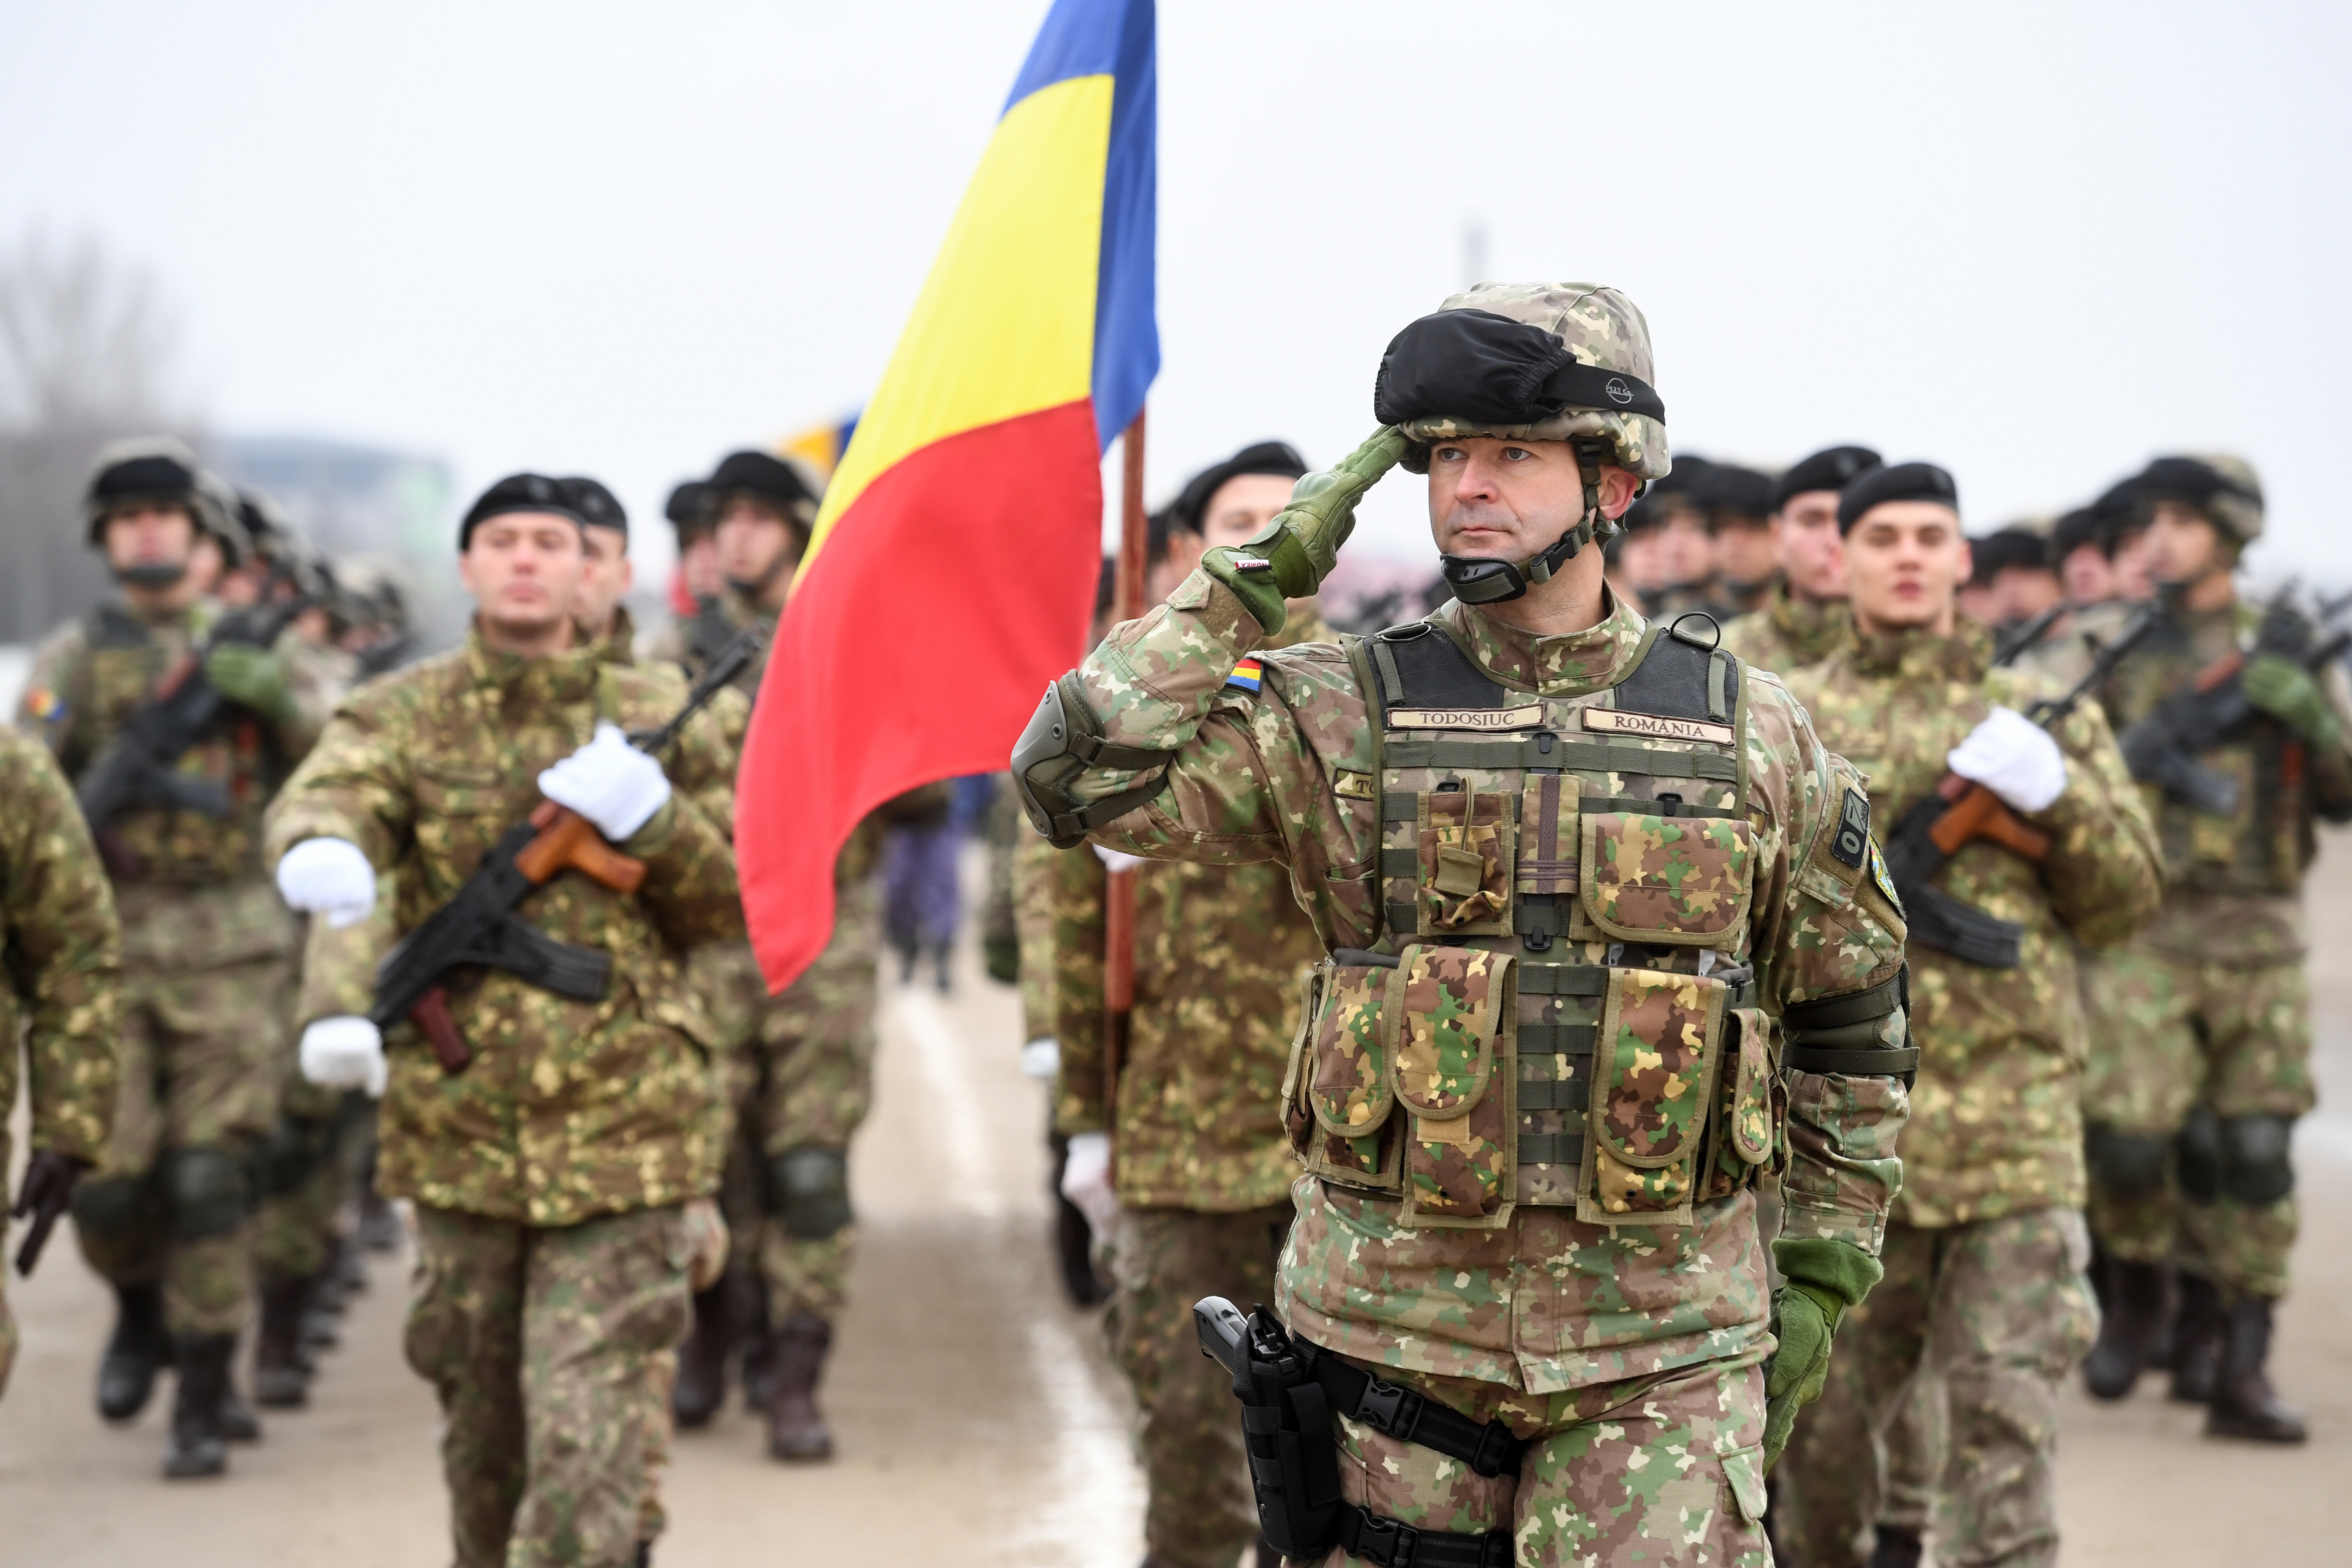 Parada militară 1 Decembrie 2019 București. Restricțile de trafic din Capitală - Imaginea 8